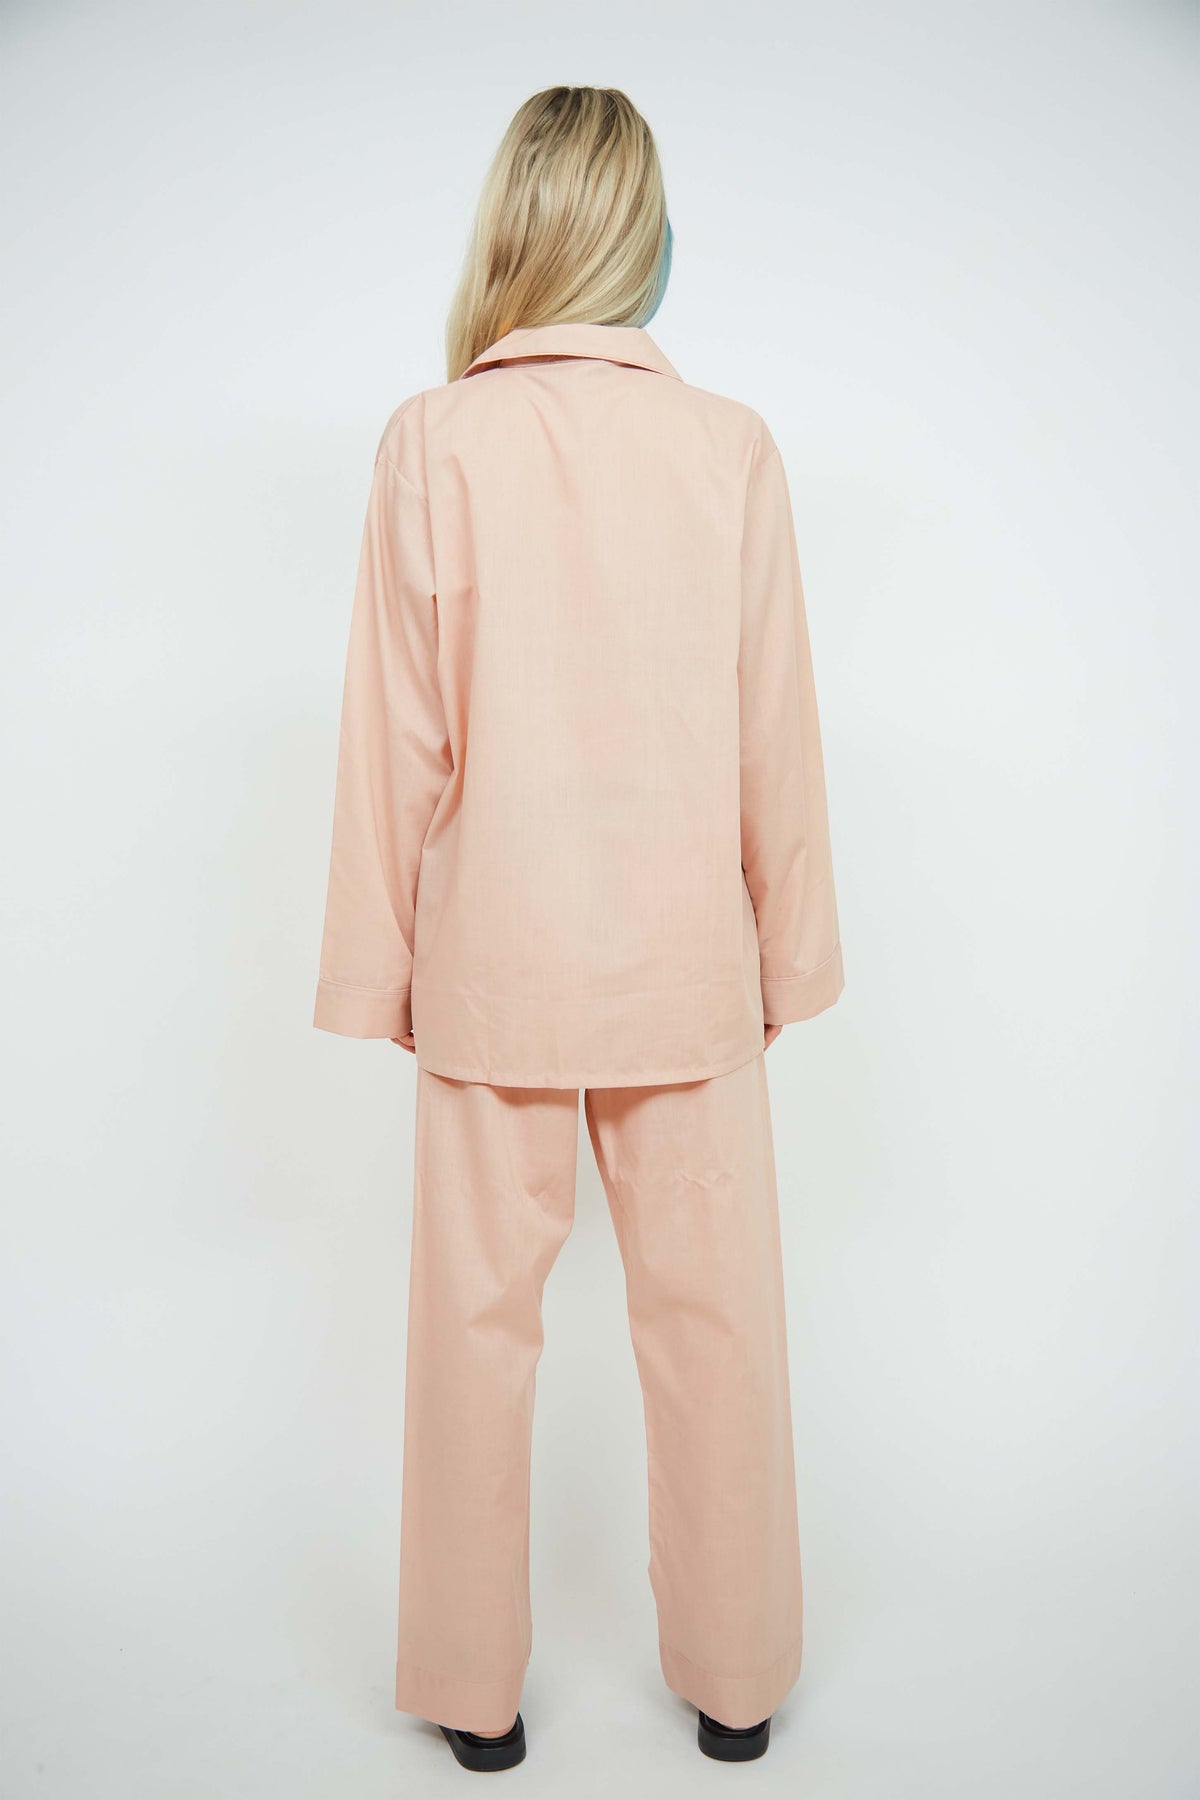 Yves Saint Laurent pajamas